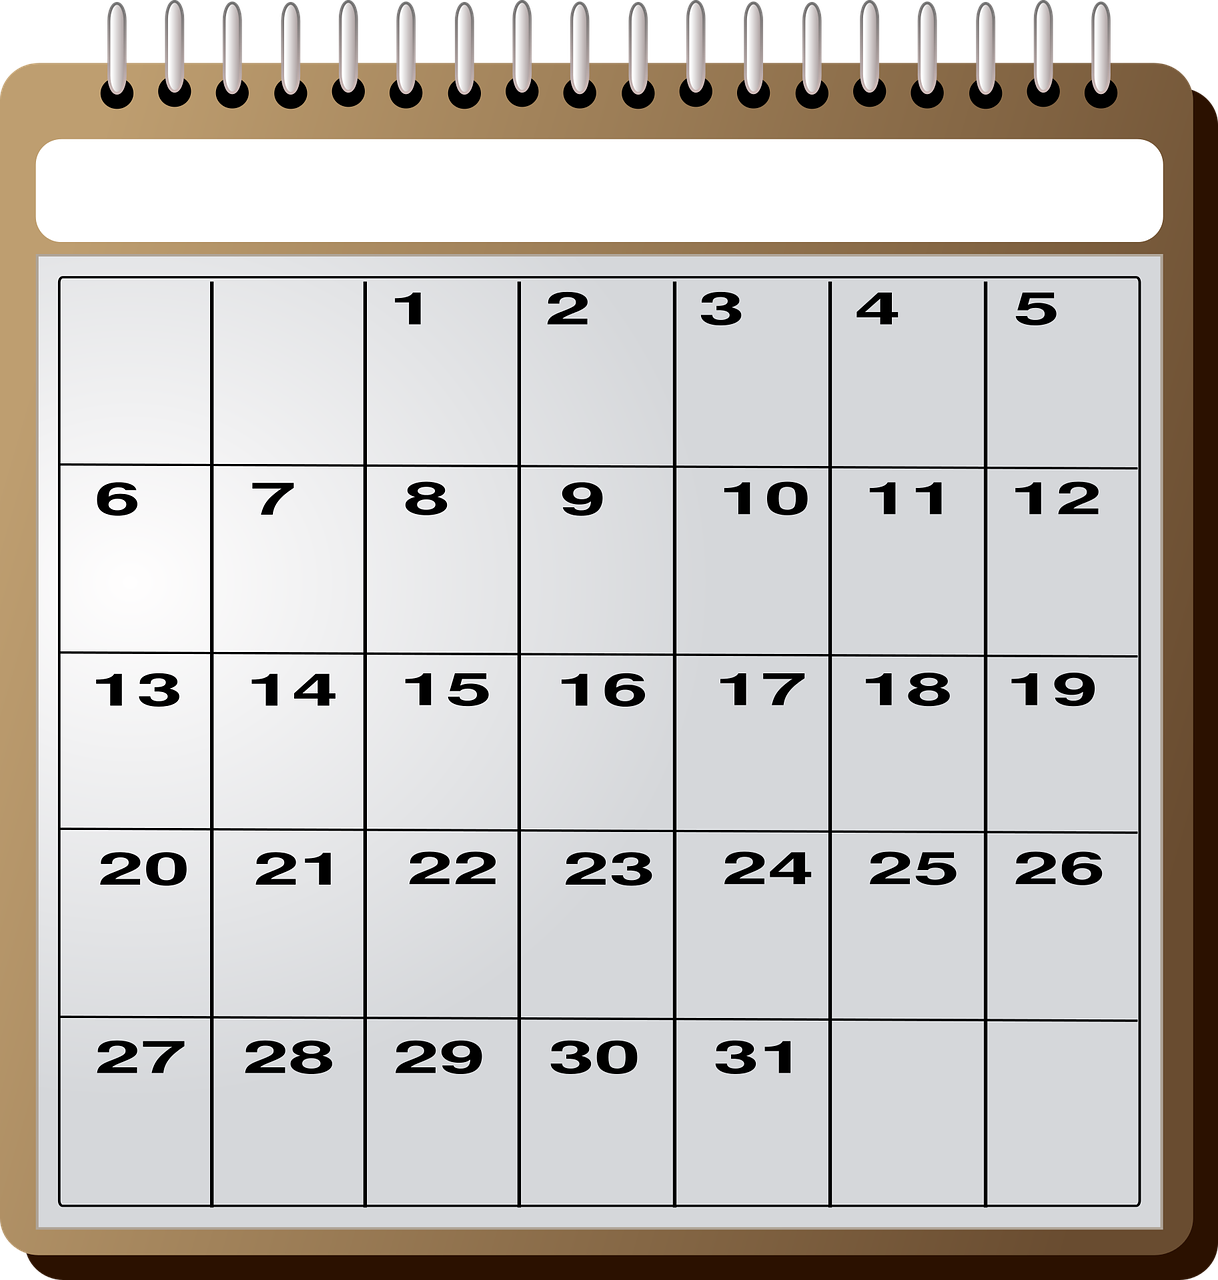 Calculez facilement le nombre de jours ouvrés entre deux dates avec notre méthode pratique : astuces pour estimer la durée